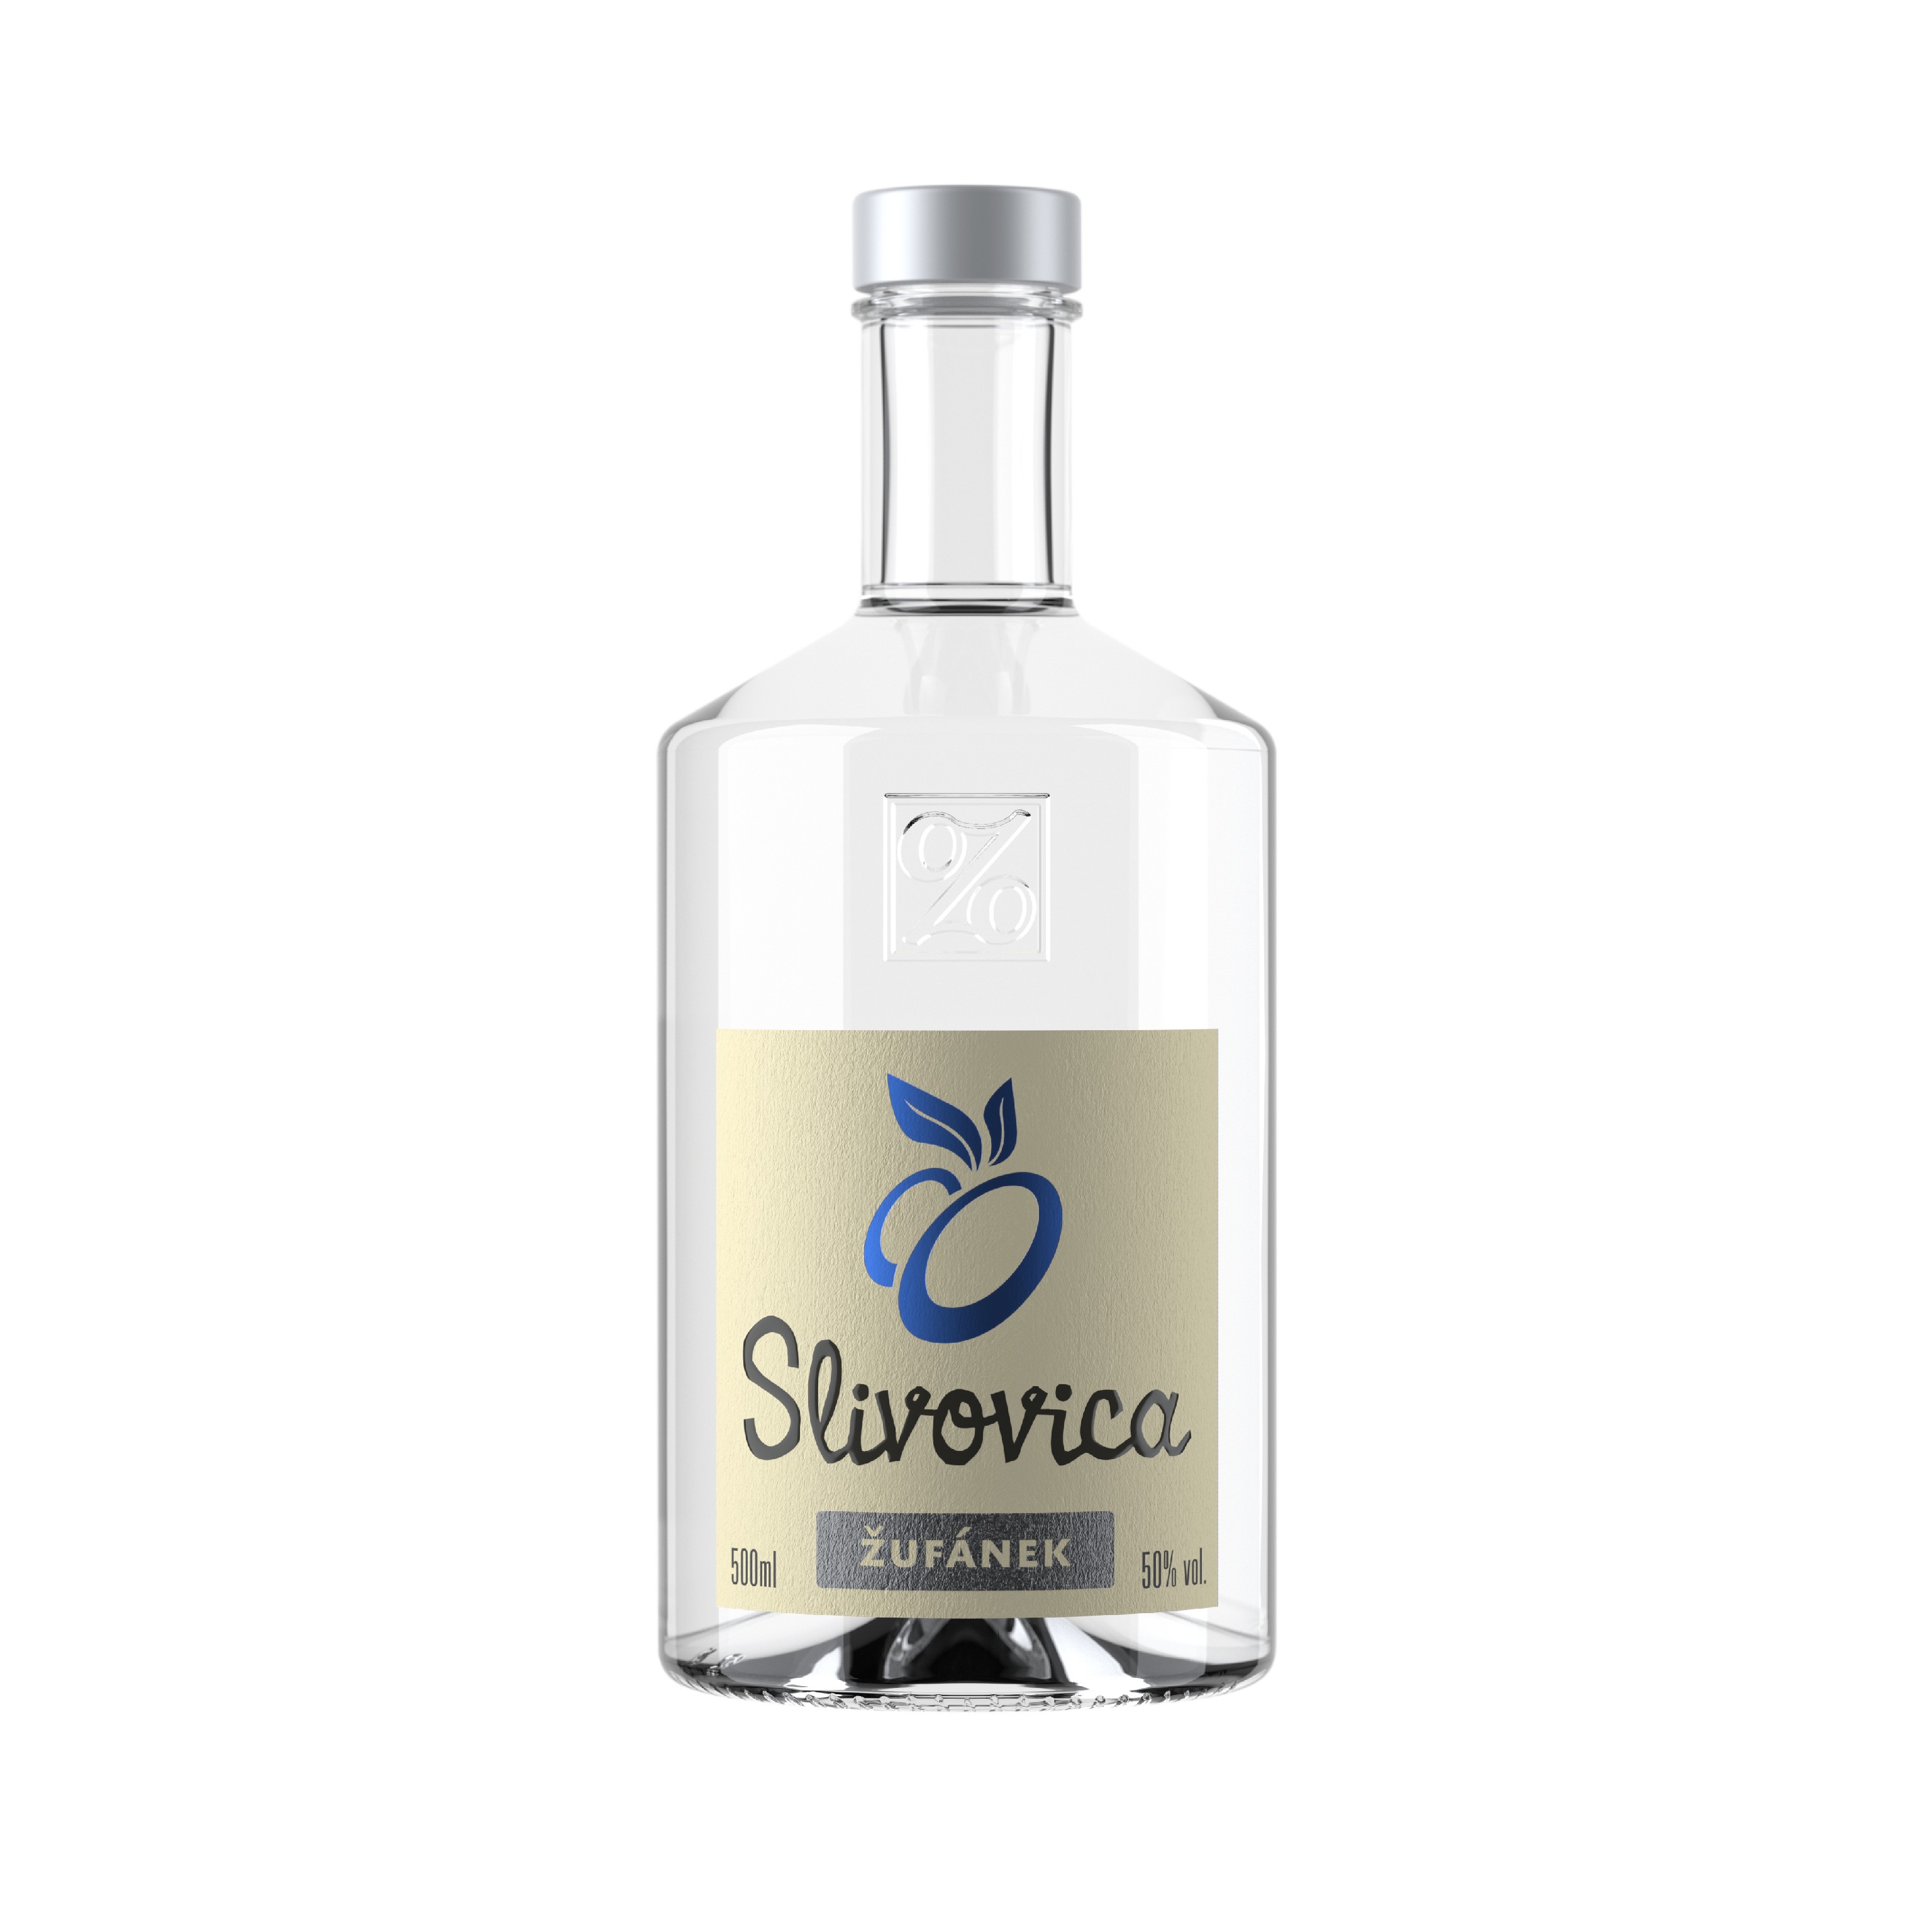 Slivovitz Plum brandy Zufanek, a fine fruit spirit distilled from plums